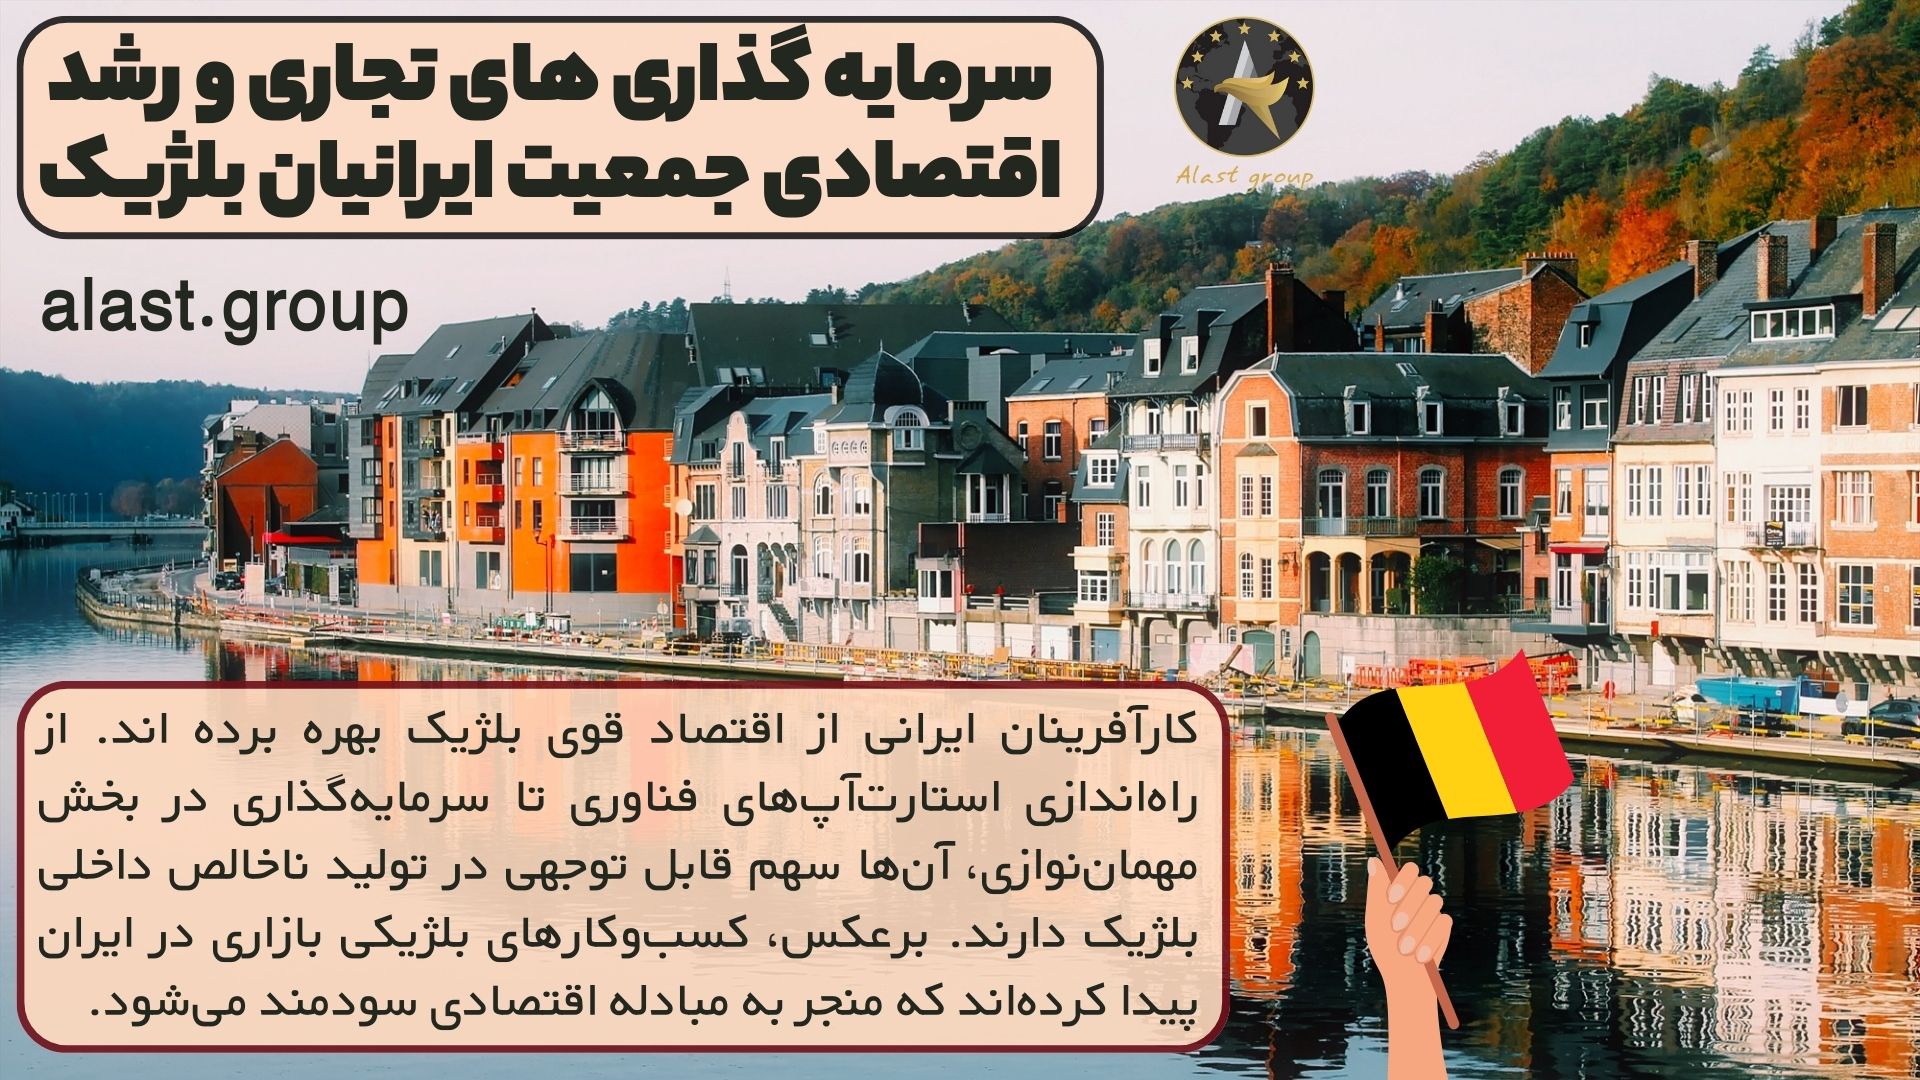 سرمایه گذاری های تجاری و رشد اقتصادی جمعیت ایرانیان بلژیک